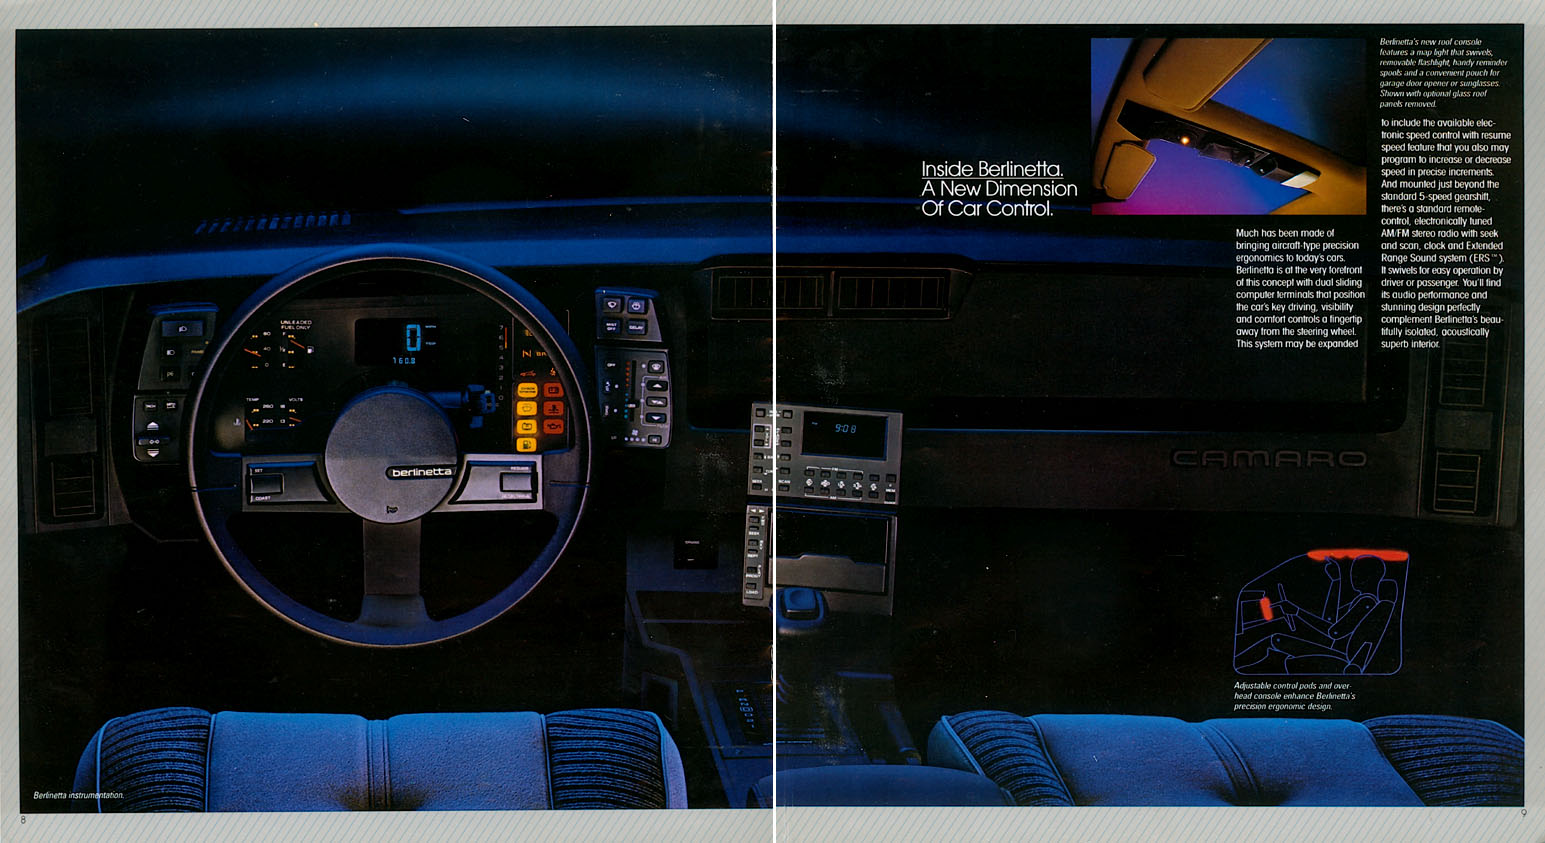 1983 Camaro OEM Brochure (5)